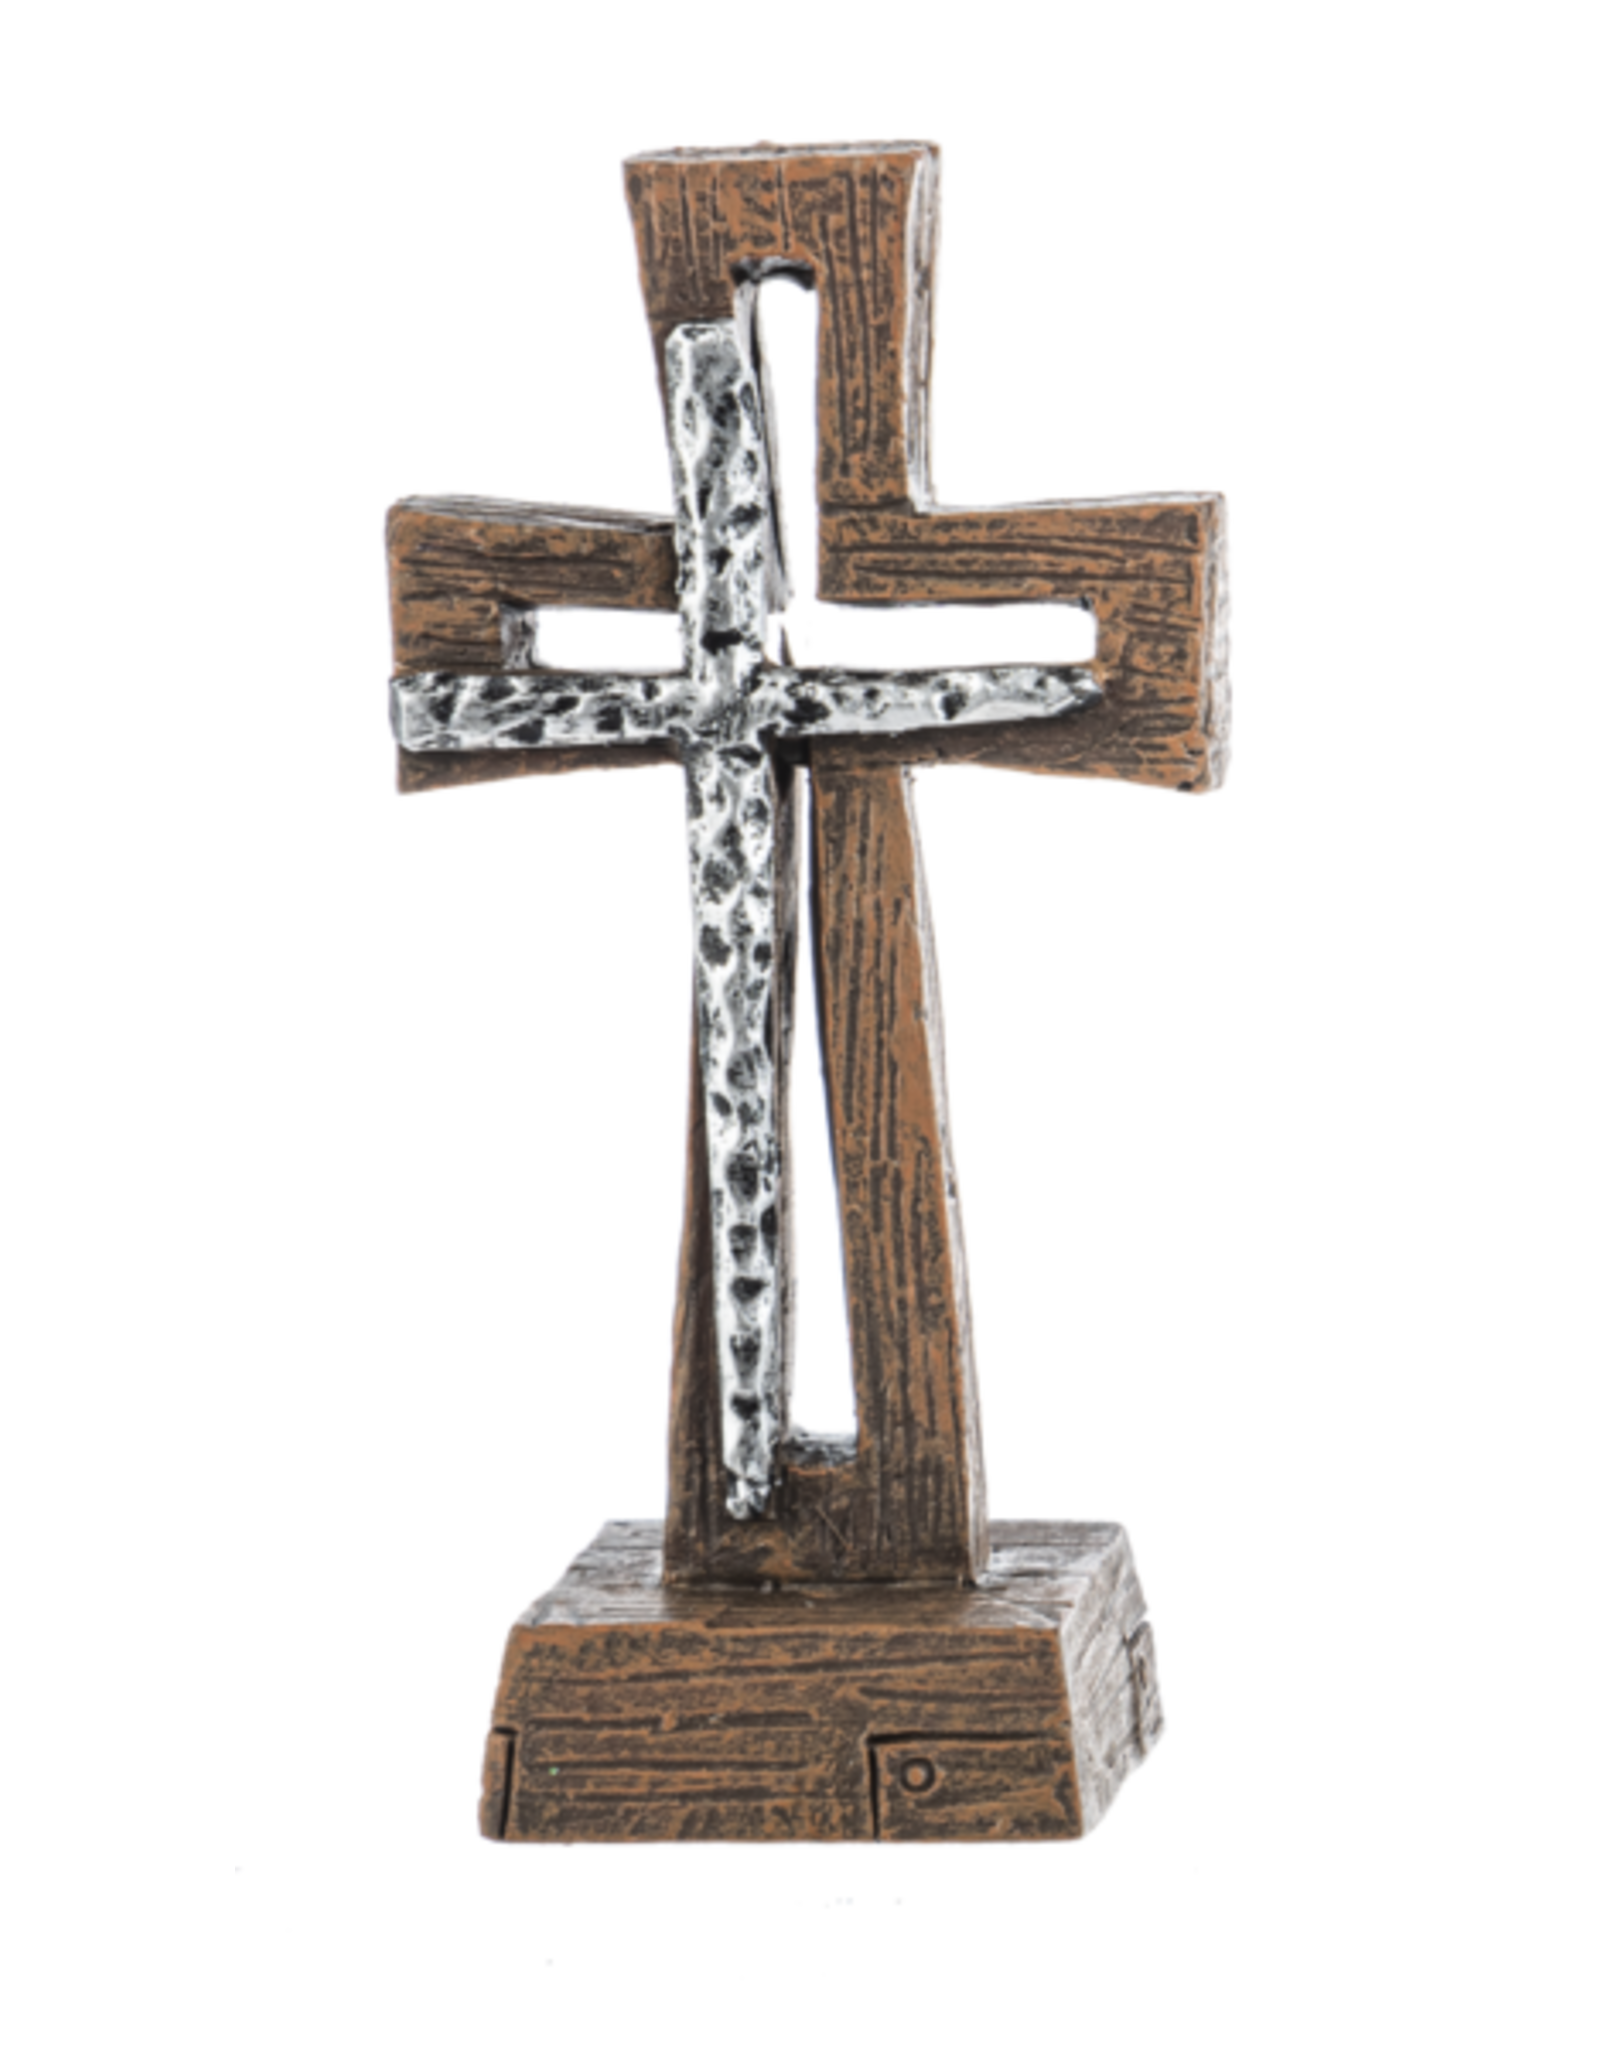 Ganz Cross of Faith Figurines (Various)